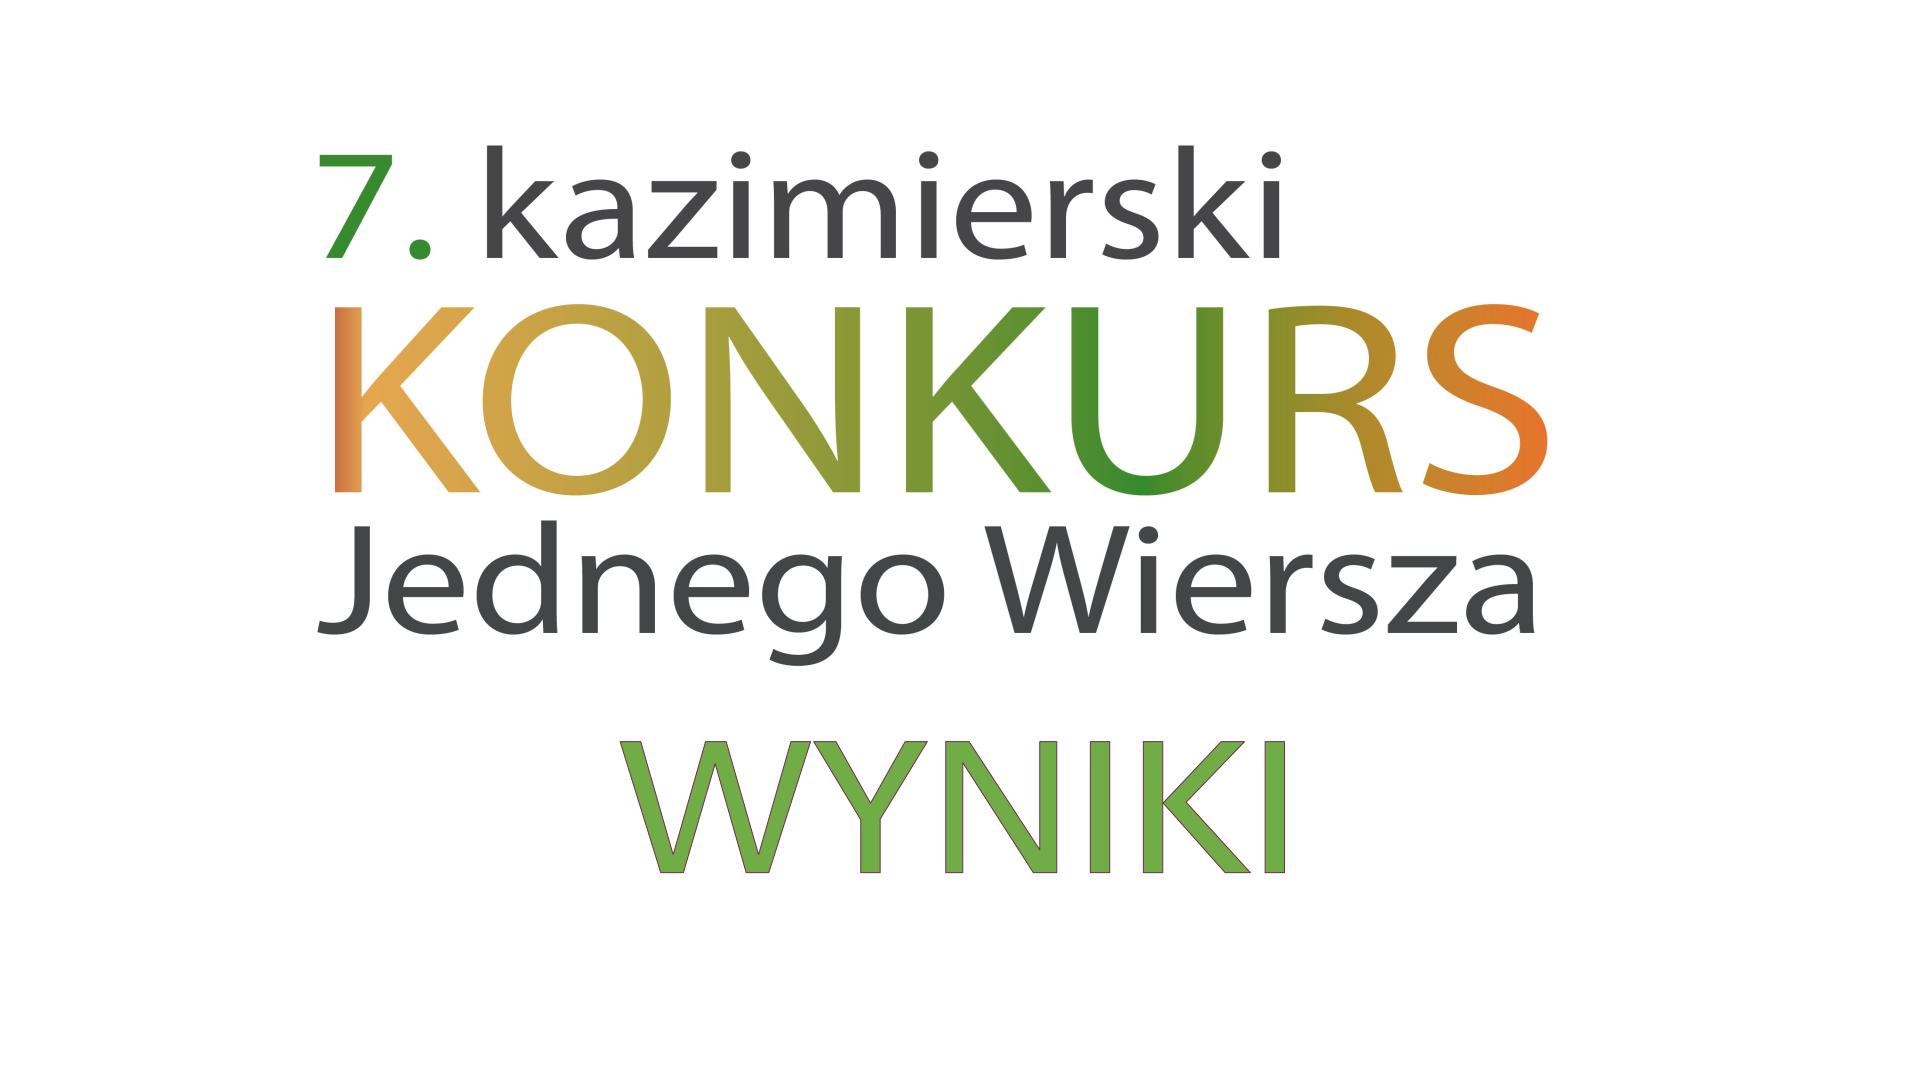 Zdjęcie prezentuje plakat promujący wyniki 7. Kazimierskiego Konkursu Jednego Wiersza.  